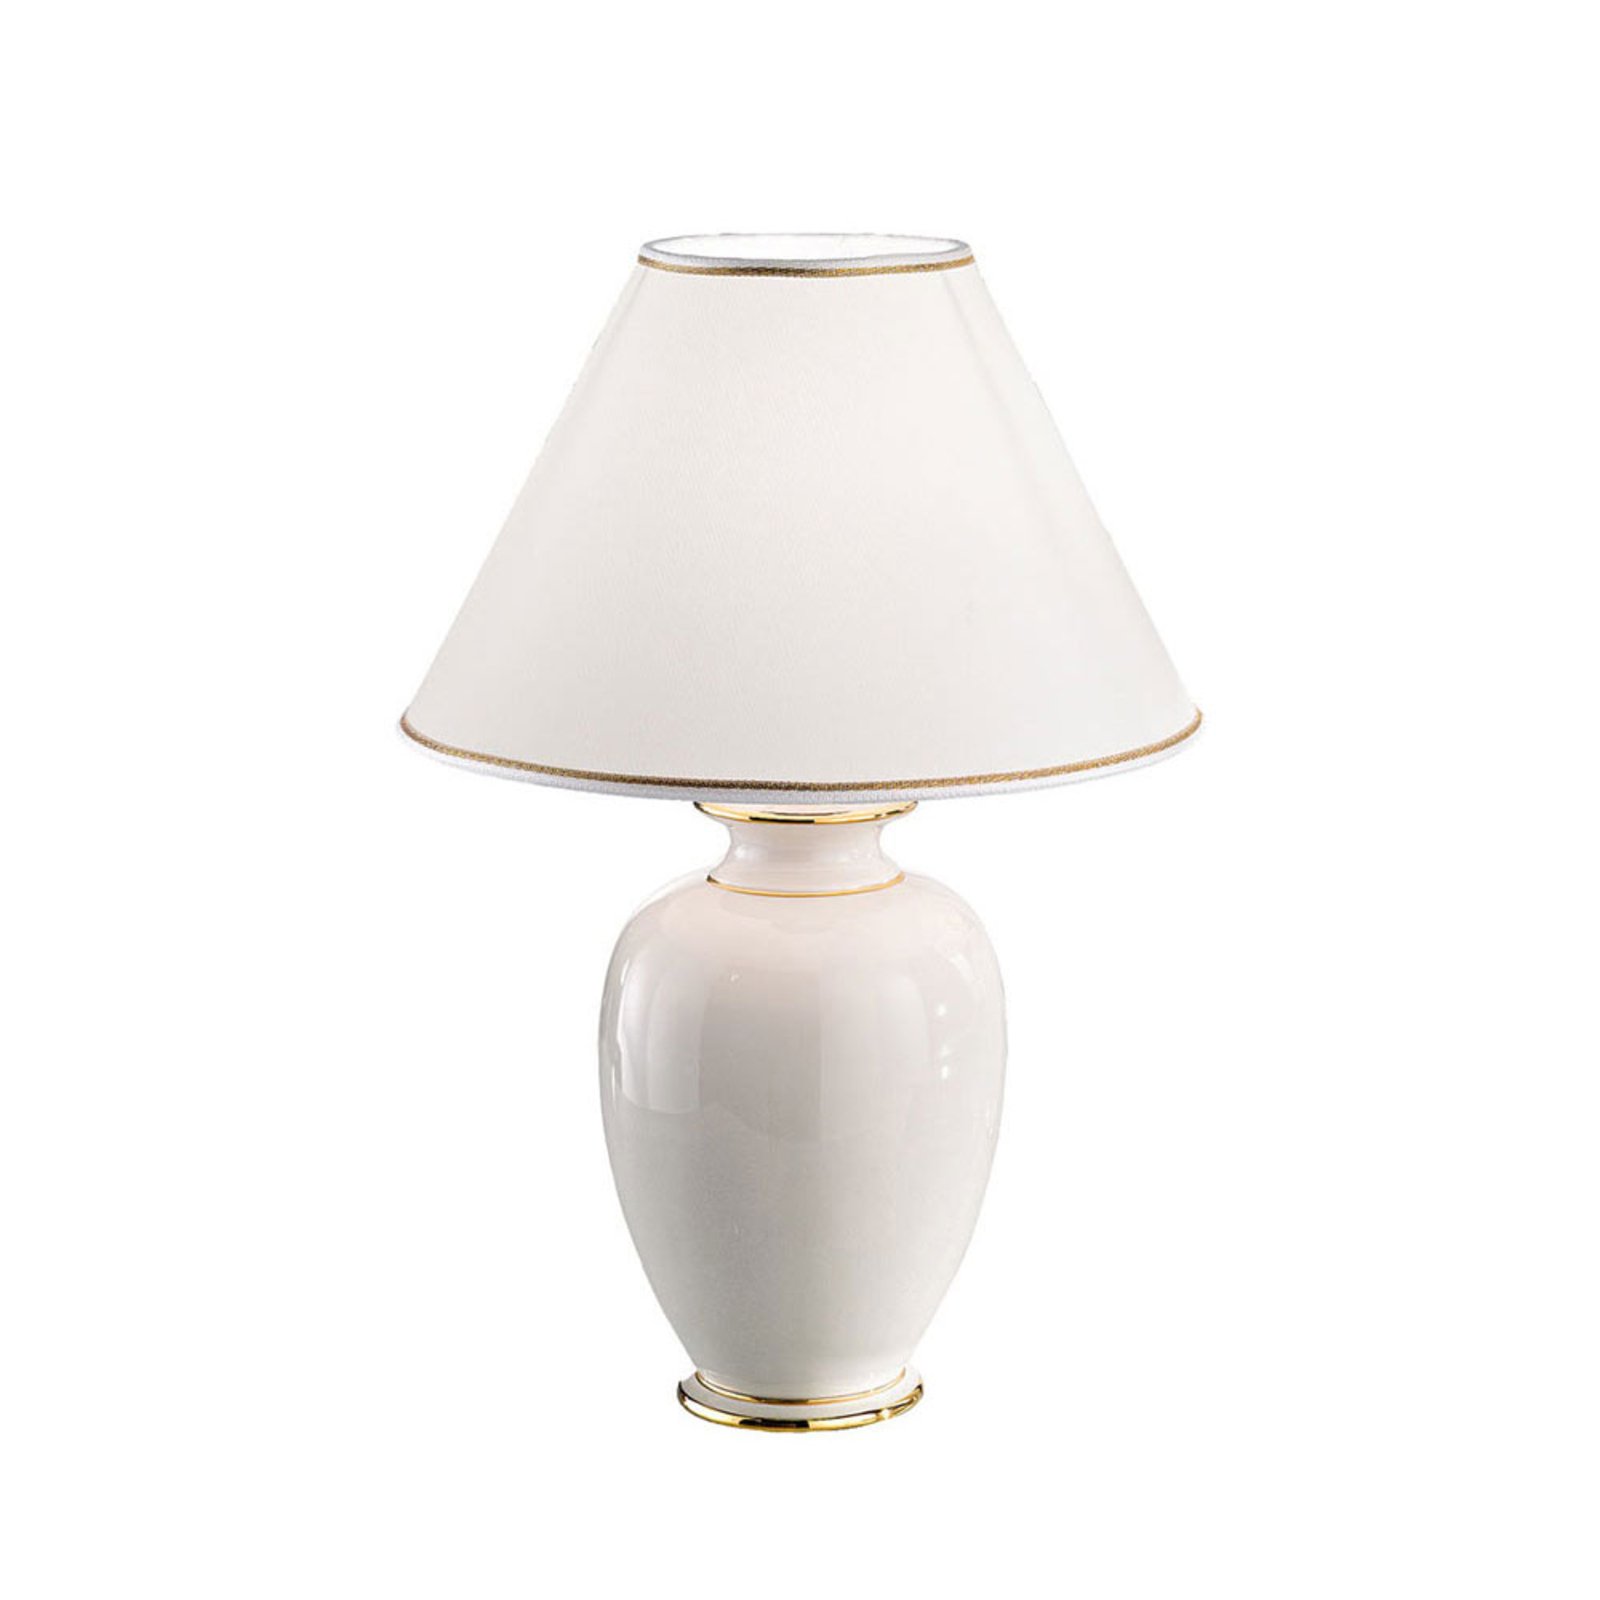 Giardino Avorio table lamp in white/gold, Ø 30 cm